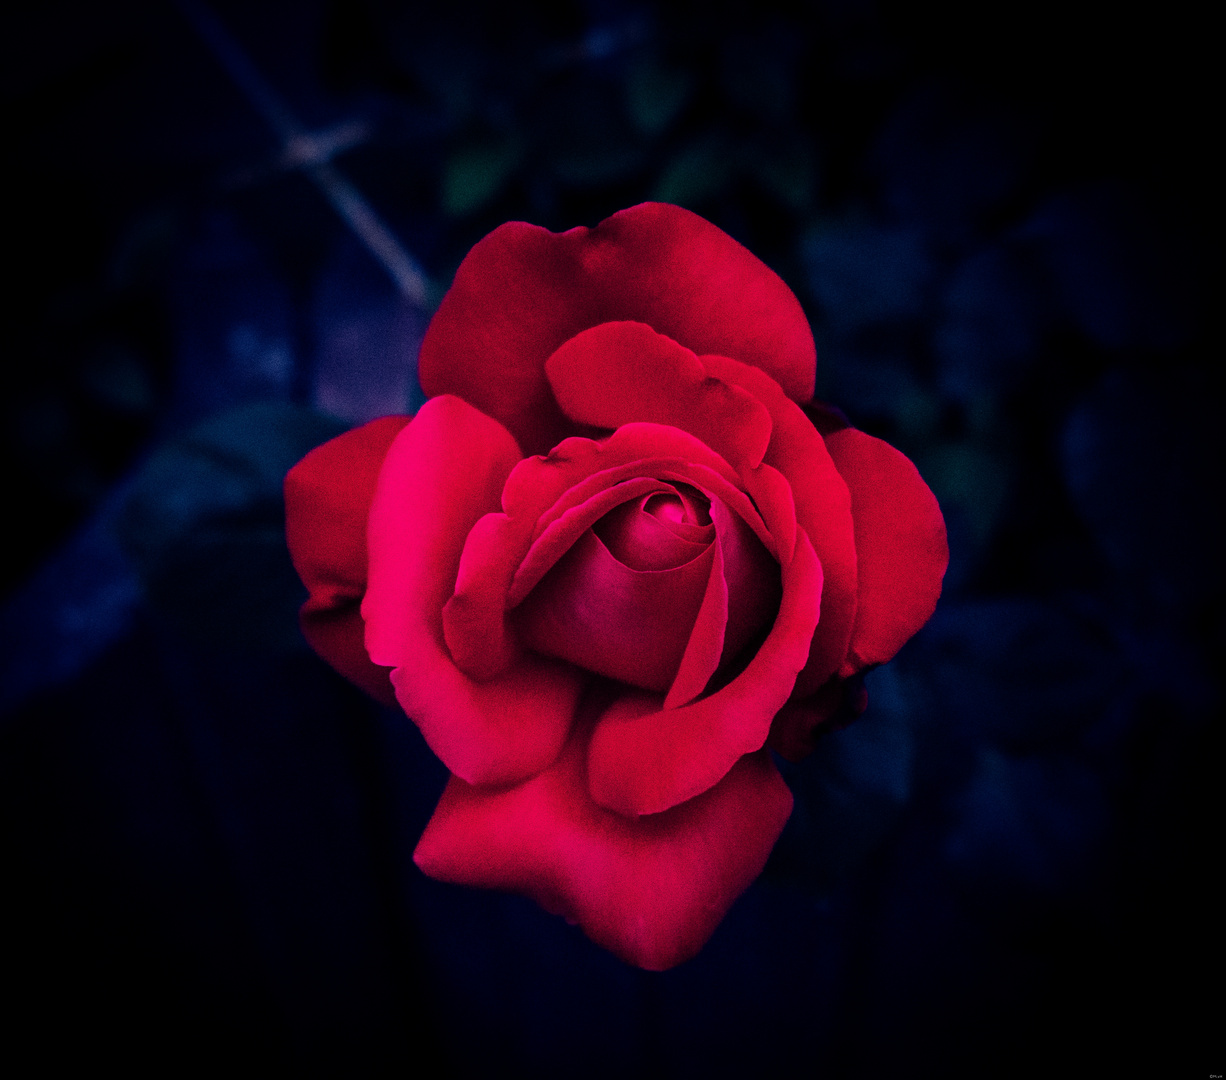 Rote Rose 